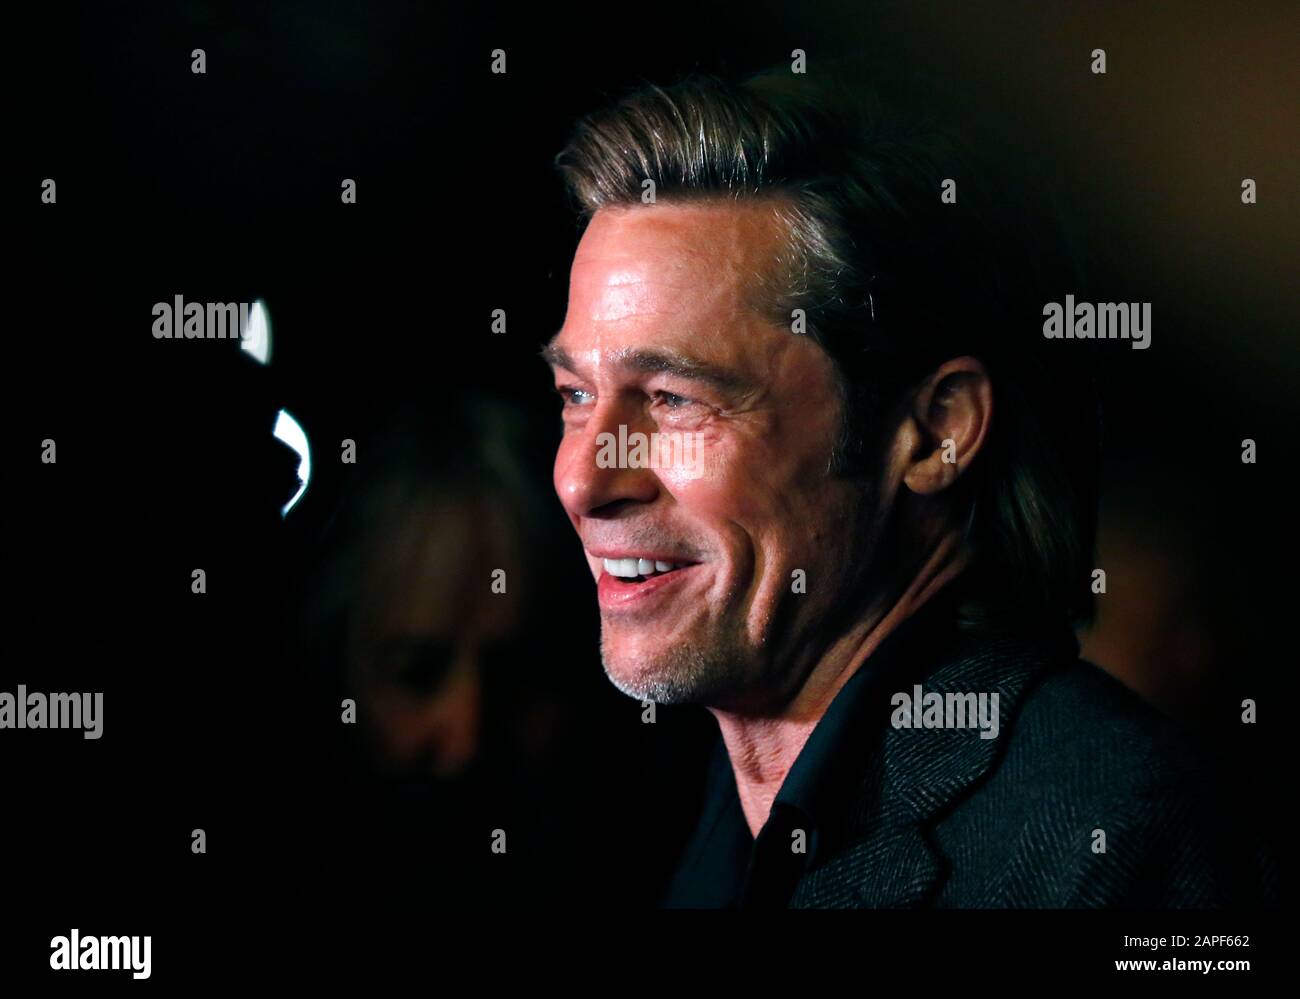 Santa Barbara, Kalifornien, USA. Januar 2020. Oscar nominierter Schauspieler Brad Pitt auf dem Santa Barbara Film Festival in Santa Barbara, Kalifornien. Pitt wurde für seine Rolle in "Once Upon a Time" in Hollywood für einen Academy Award nominiert. Credit: Daniel Dreifuss/Alamy Live News Stockfoto